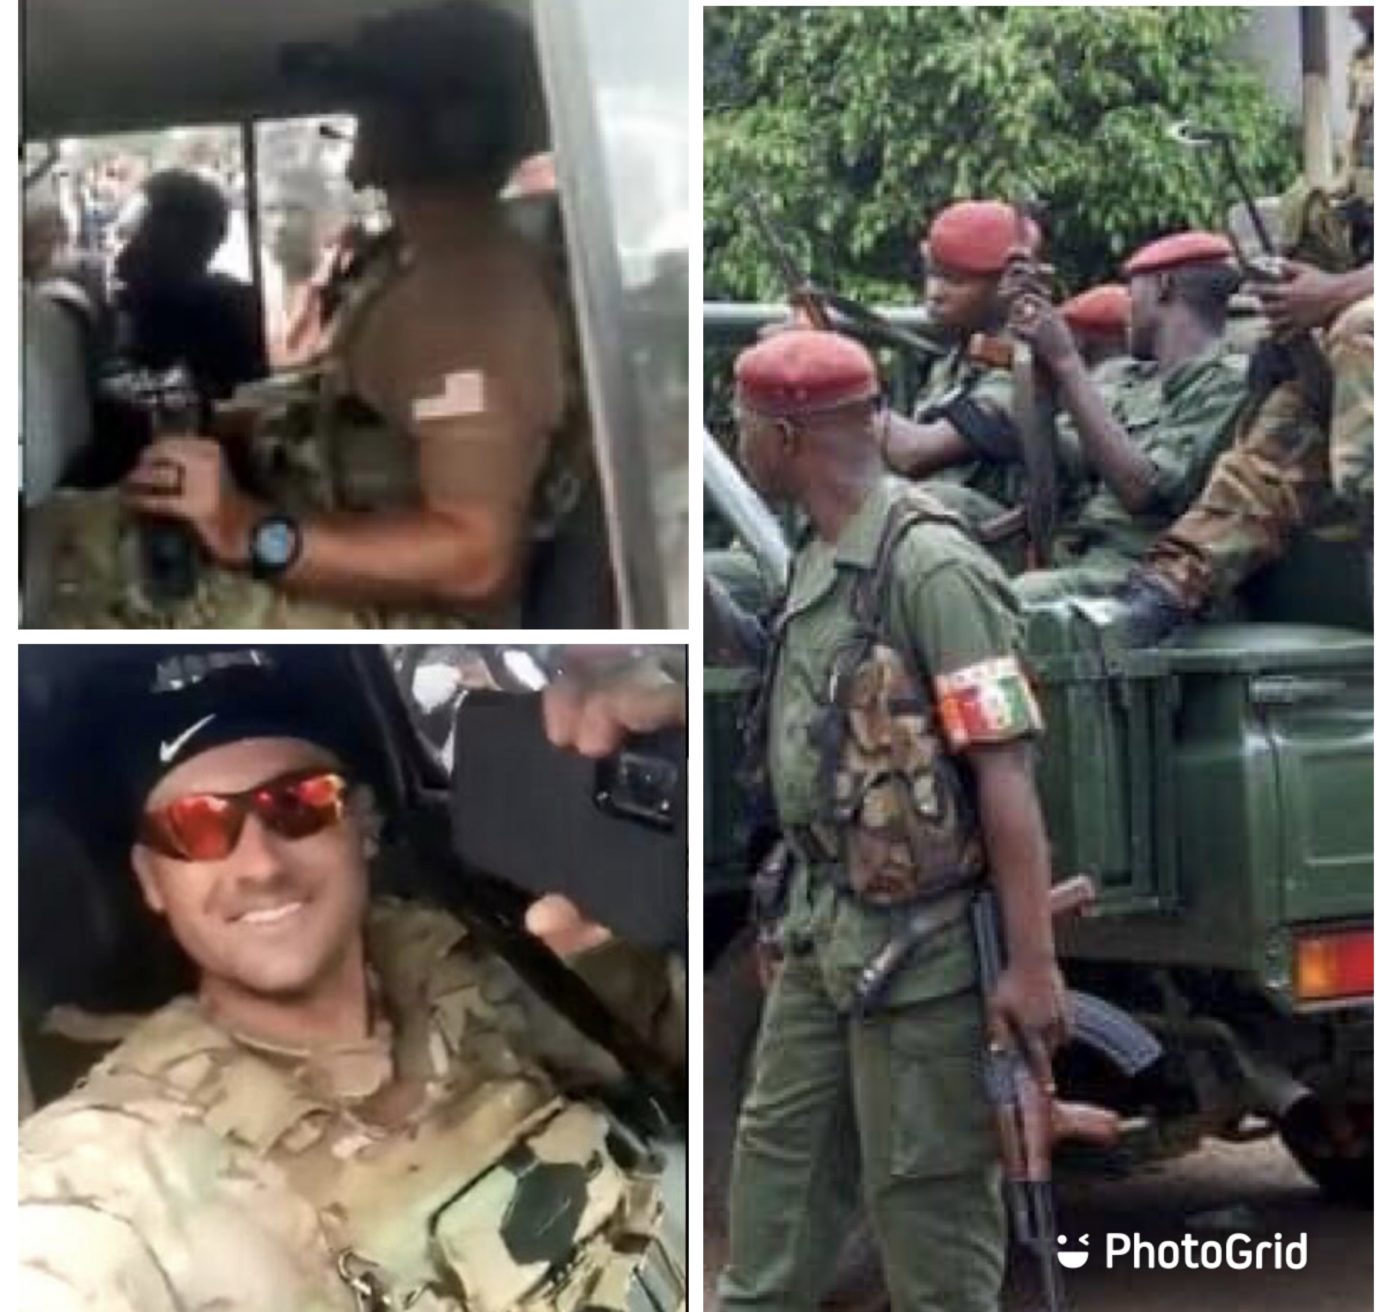 Coup d’état en Guinée : Le New York Times dévoile comment des soldats américains ont participé à la chute de Alpha Condé